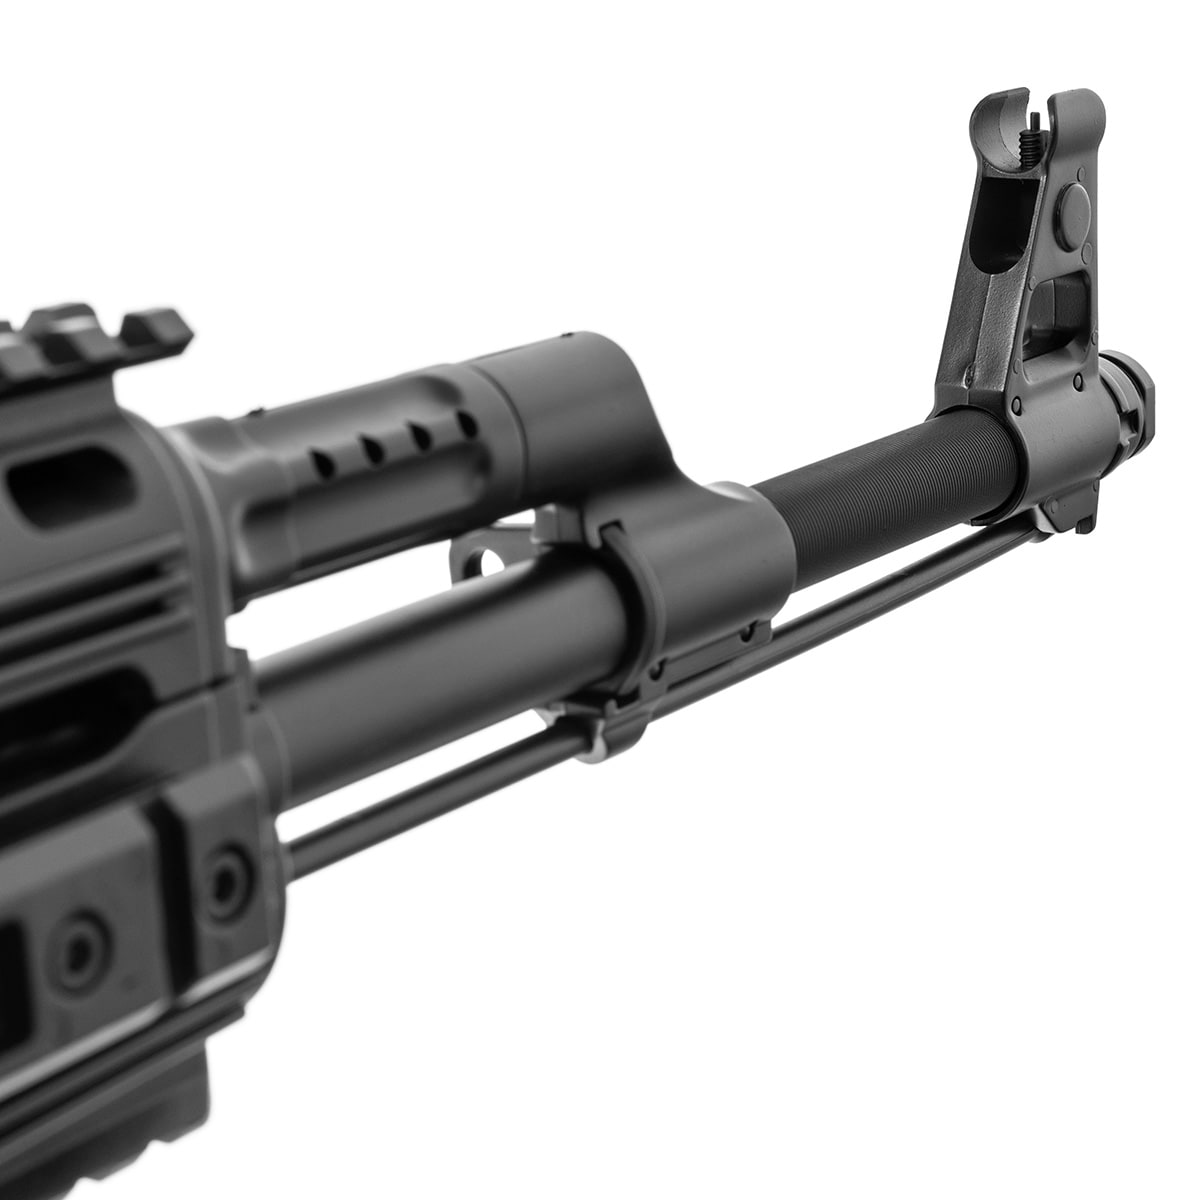 Karabinek szturmowy AEG Cybergun AK47 Tactical